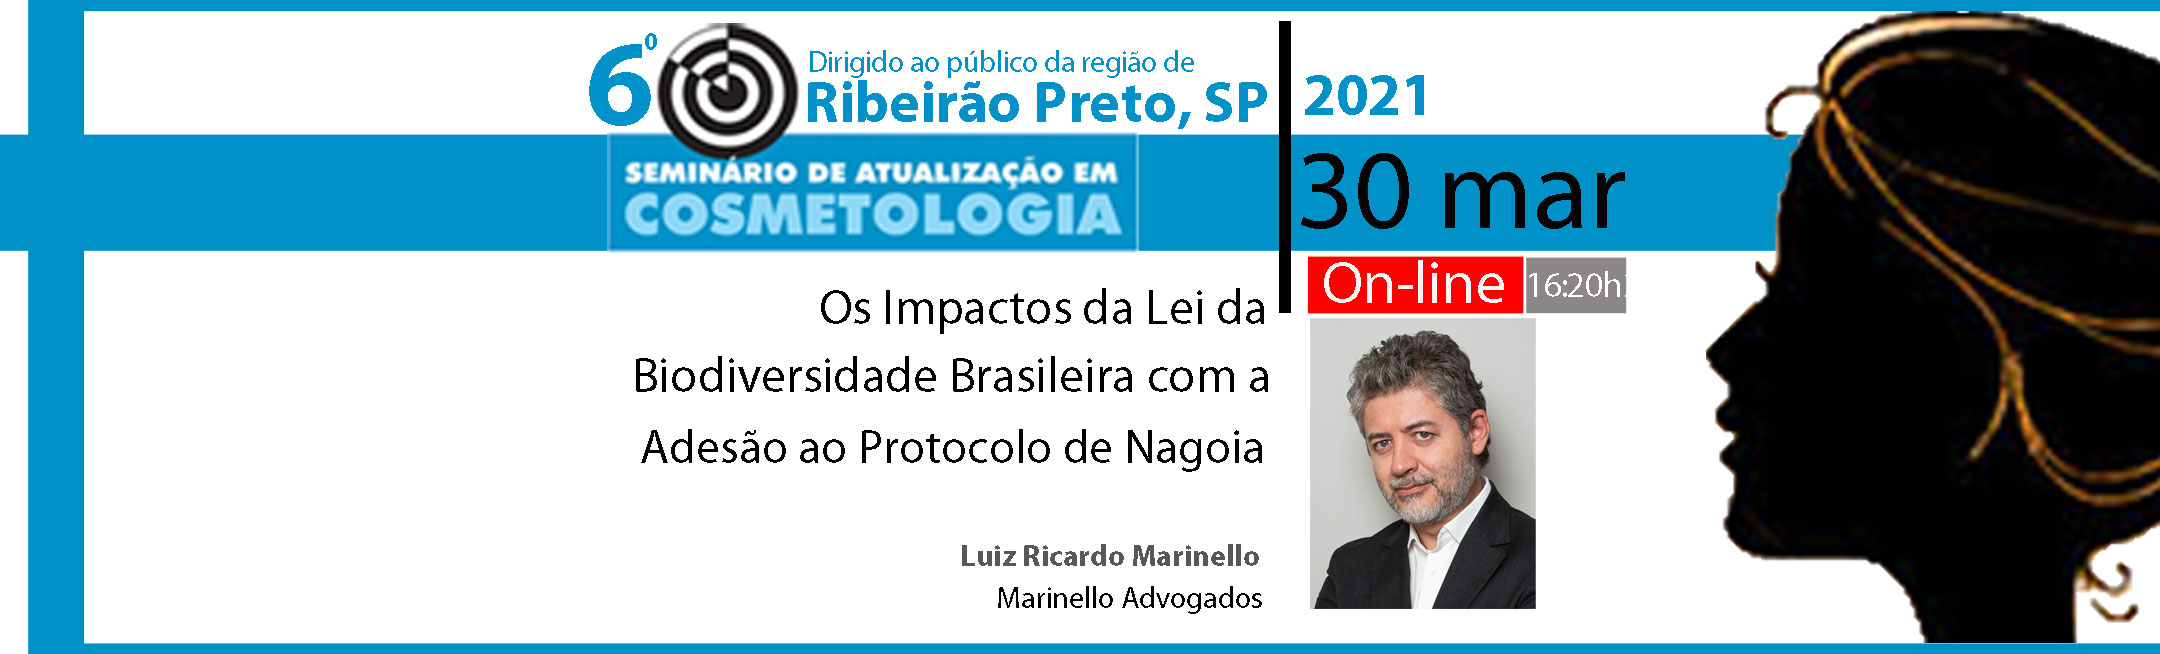 Os Impactos da Lei da Biodiversidade Brasileira com a Adesão ao Protocolo de Nagoia